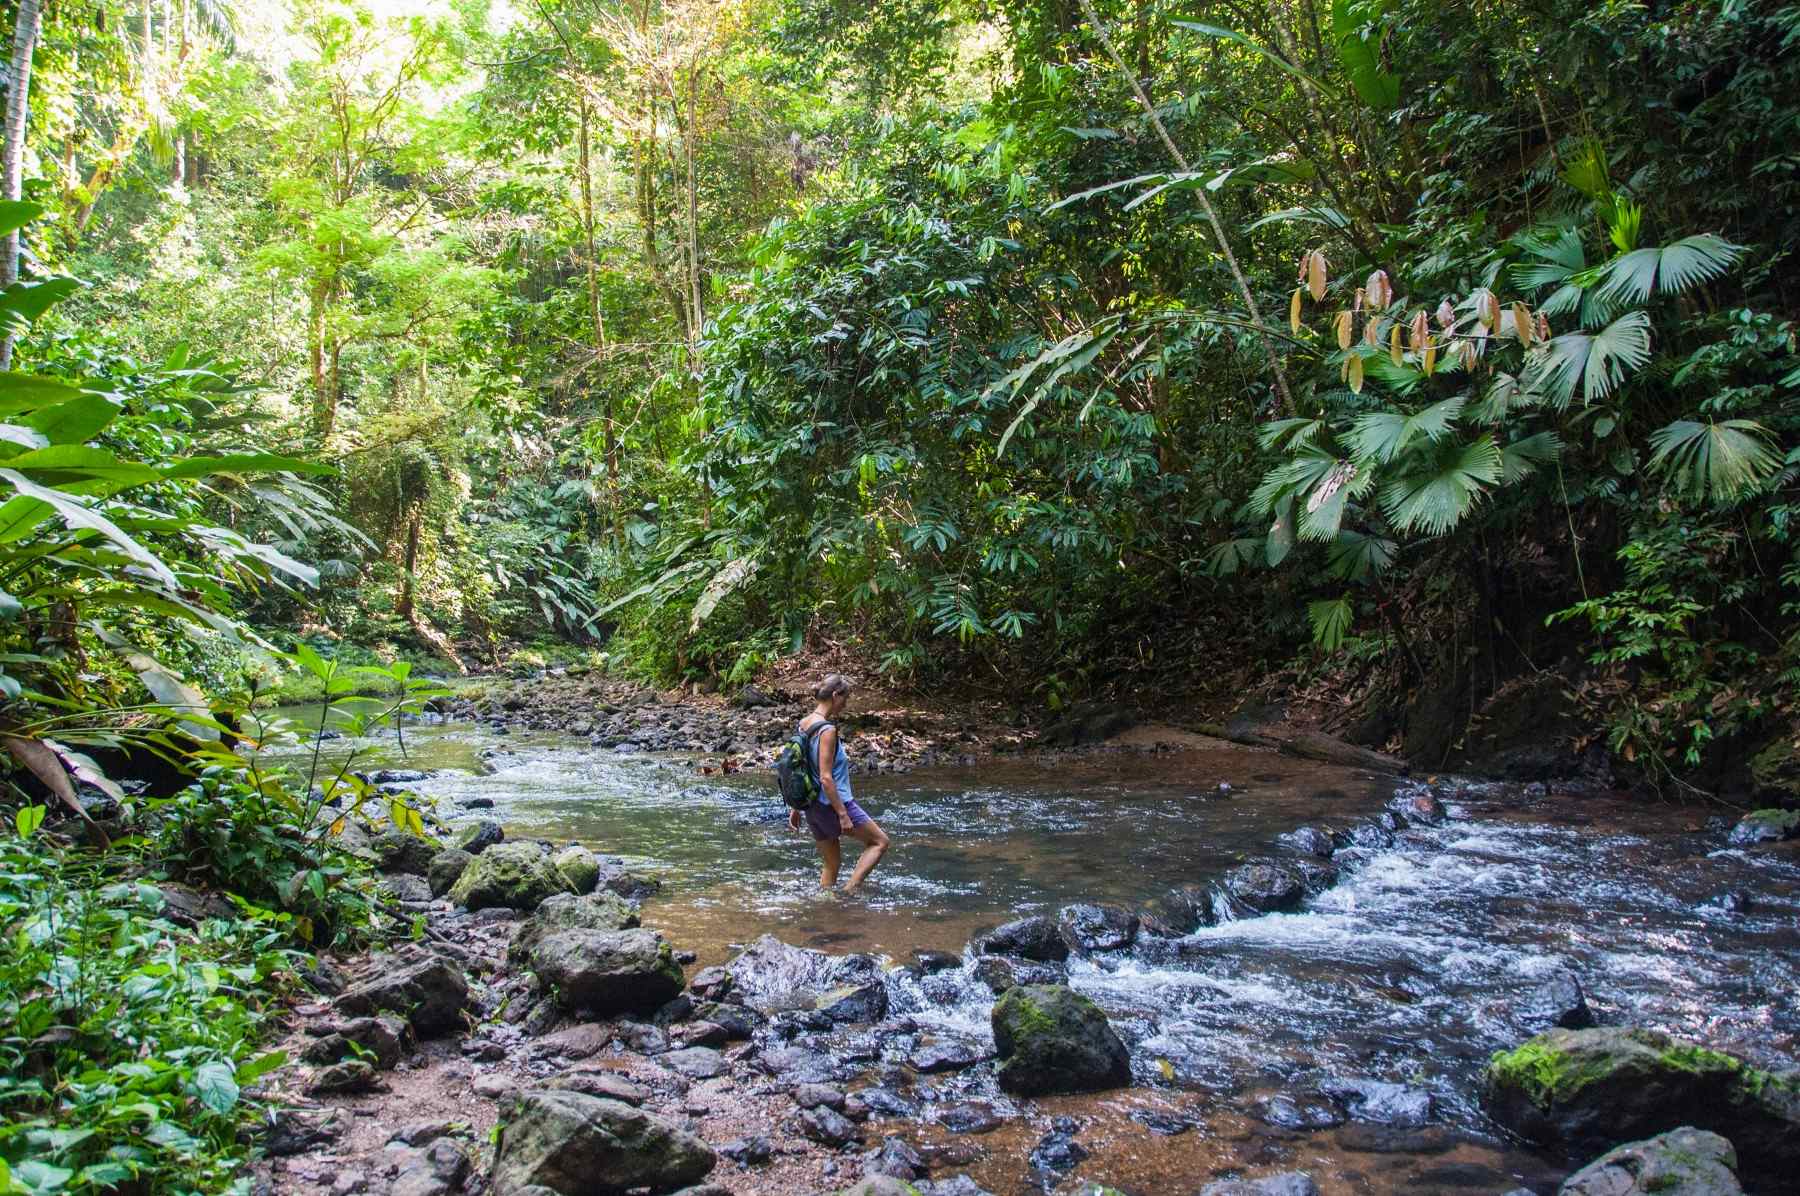 Hiker crossing a river in Costa Rica.